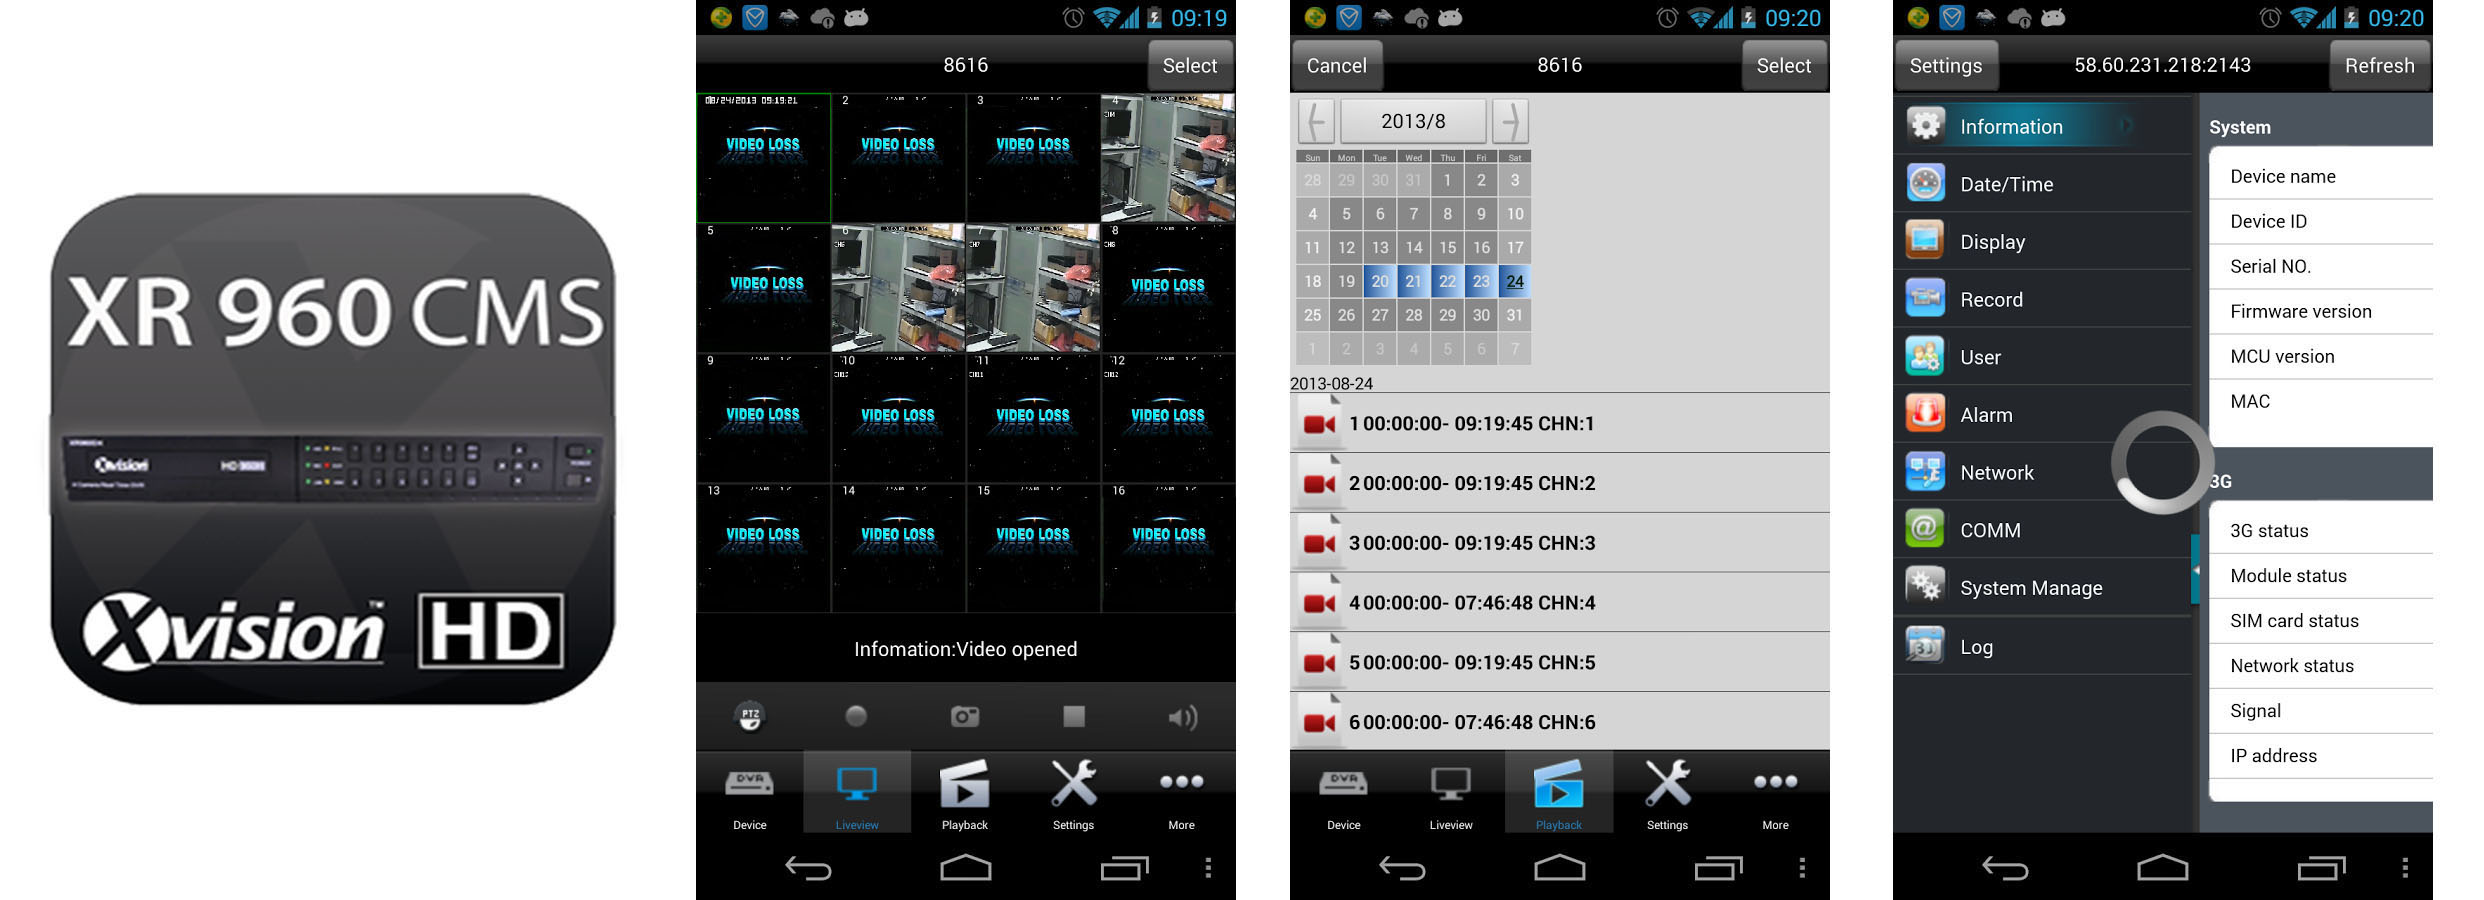 Aplikacija XR 960 cm za mobilne telefone